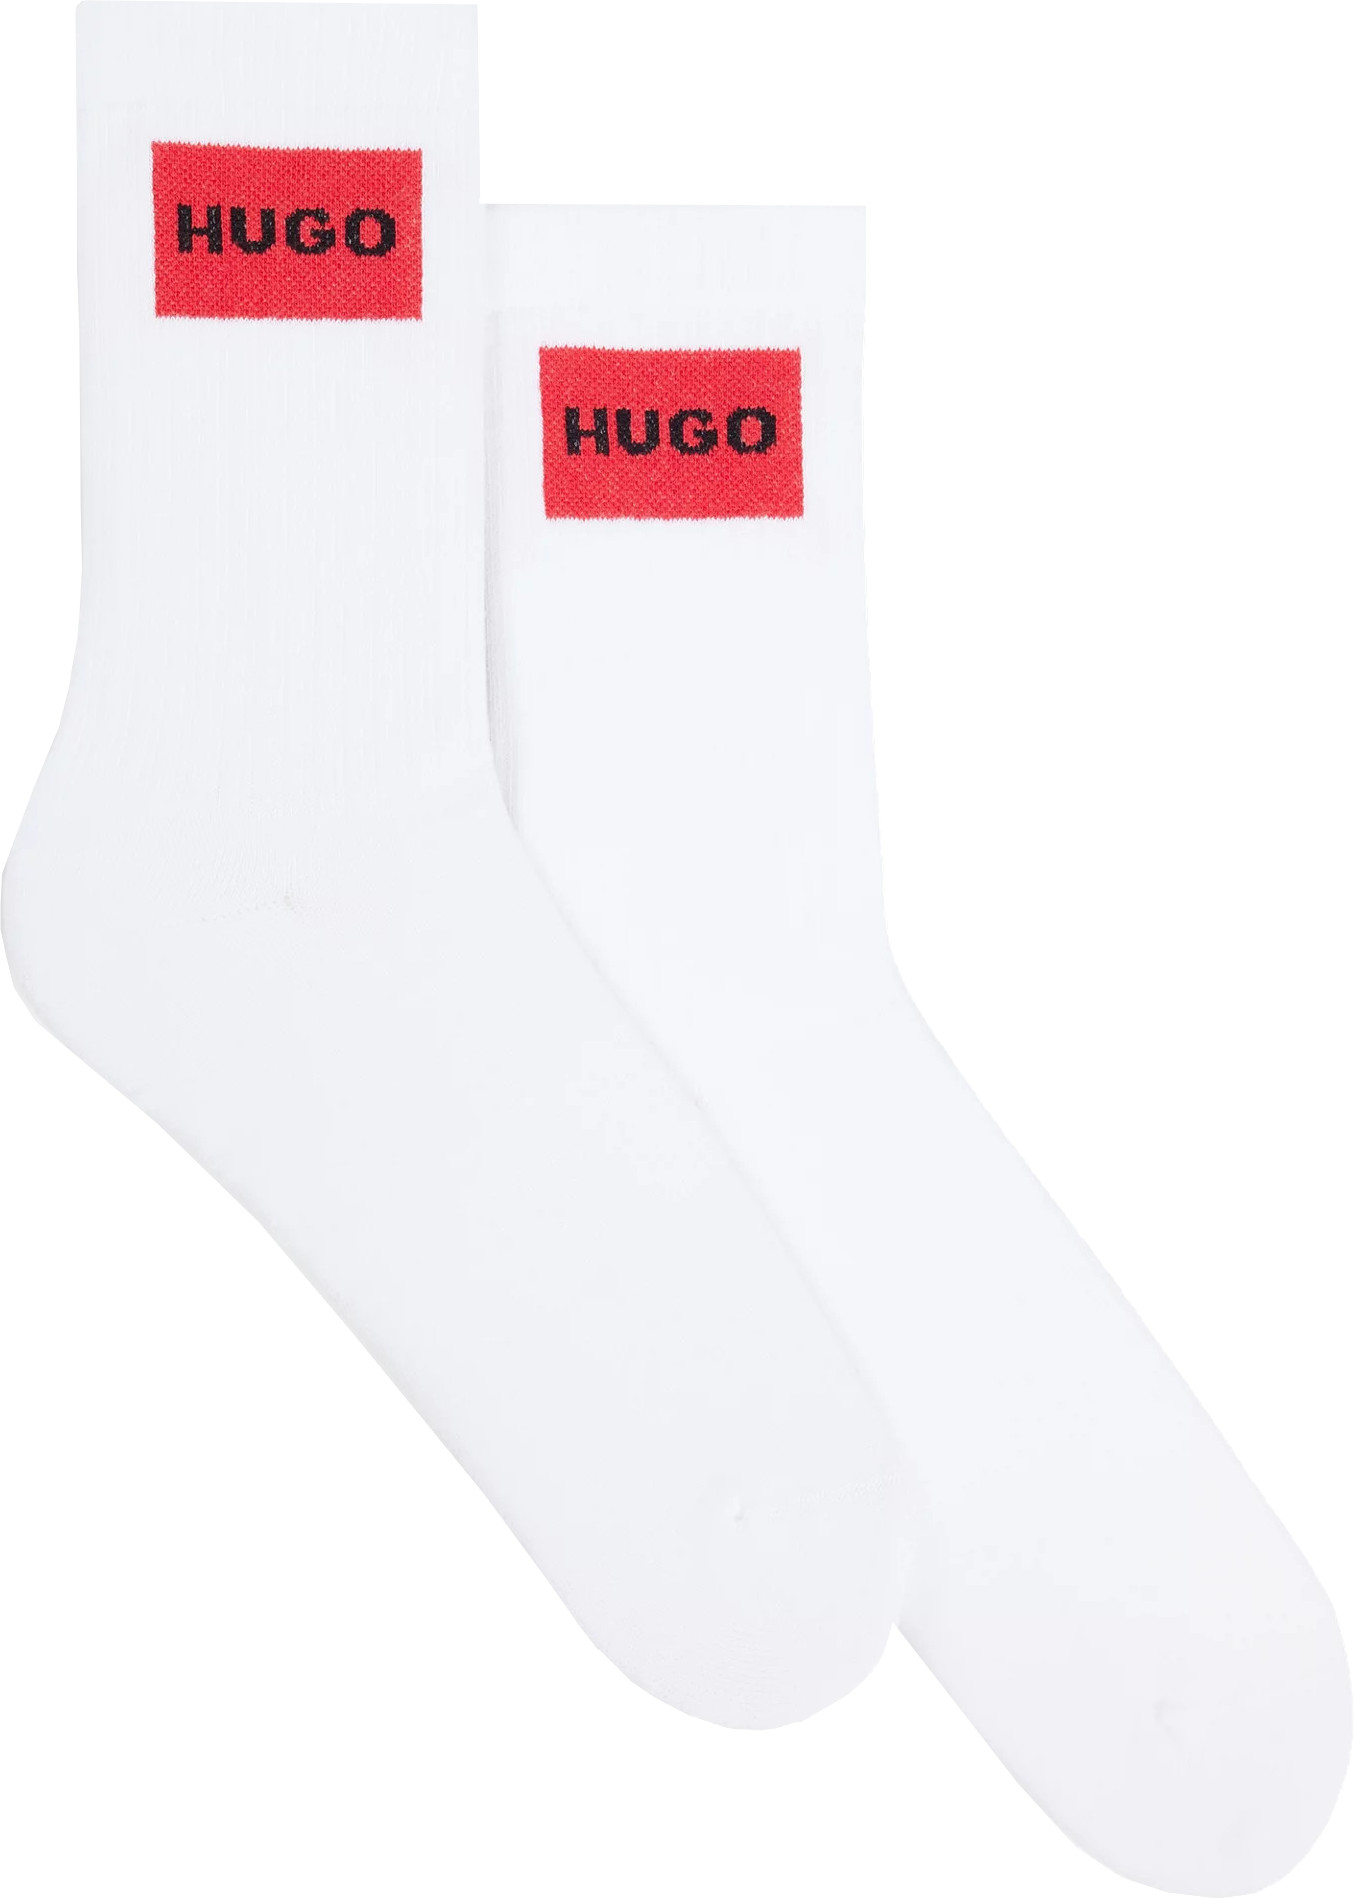 Hugo Boss 2 PACK - pánské ponožky HUGO 50510640-100 39-42